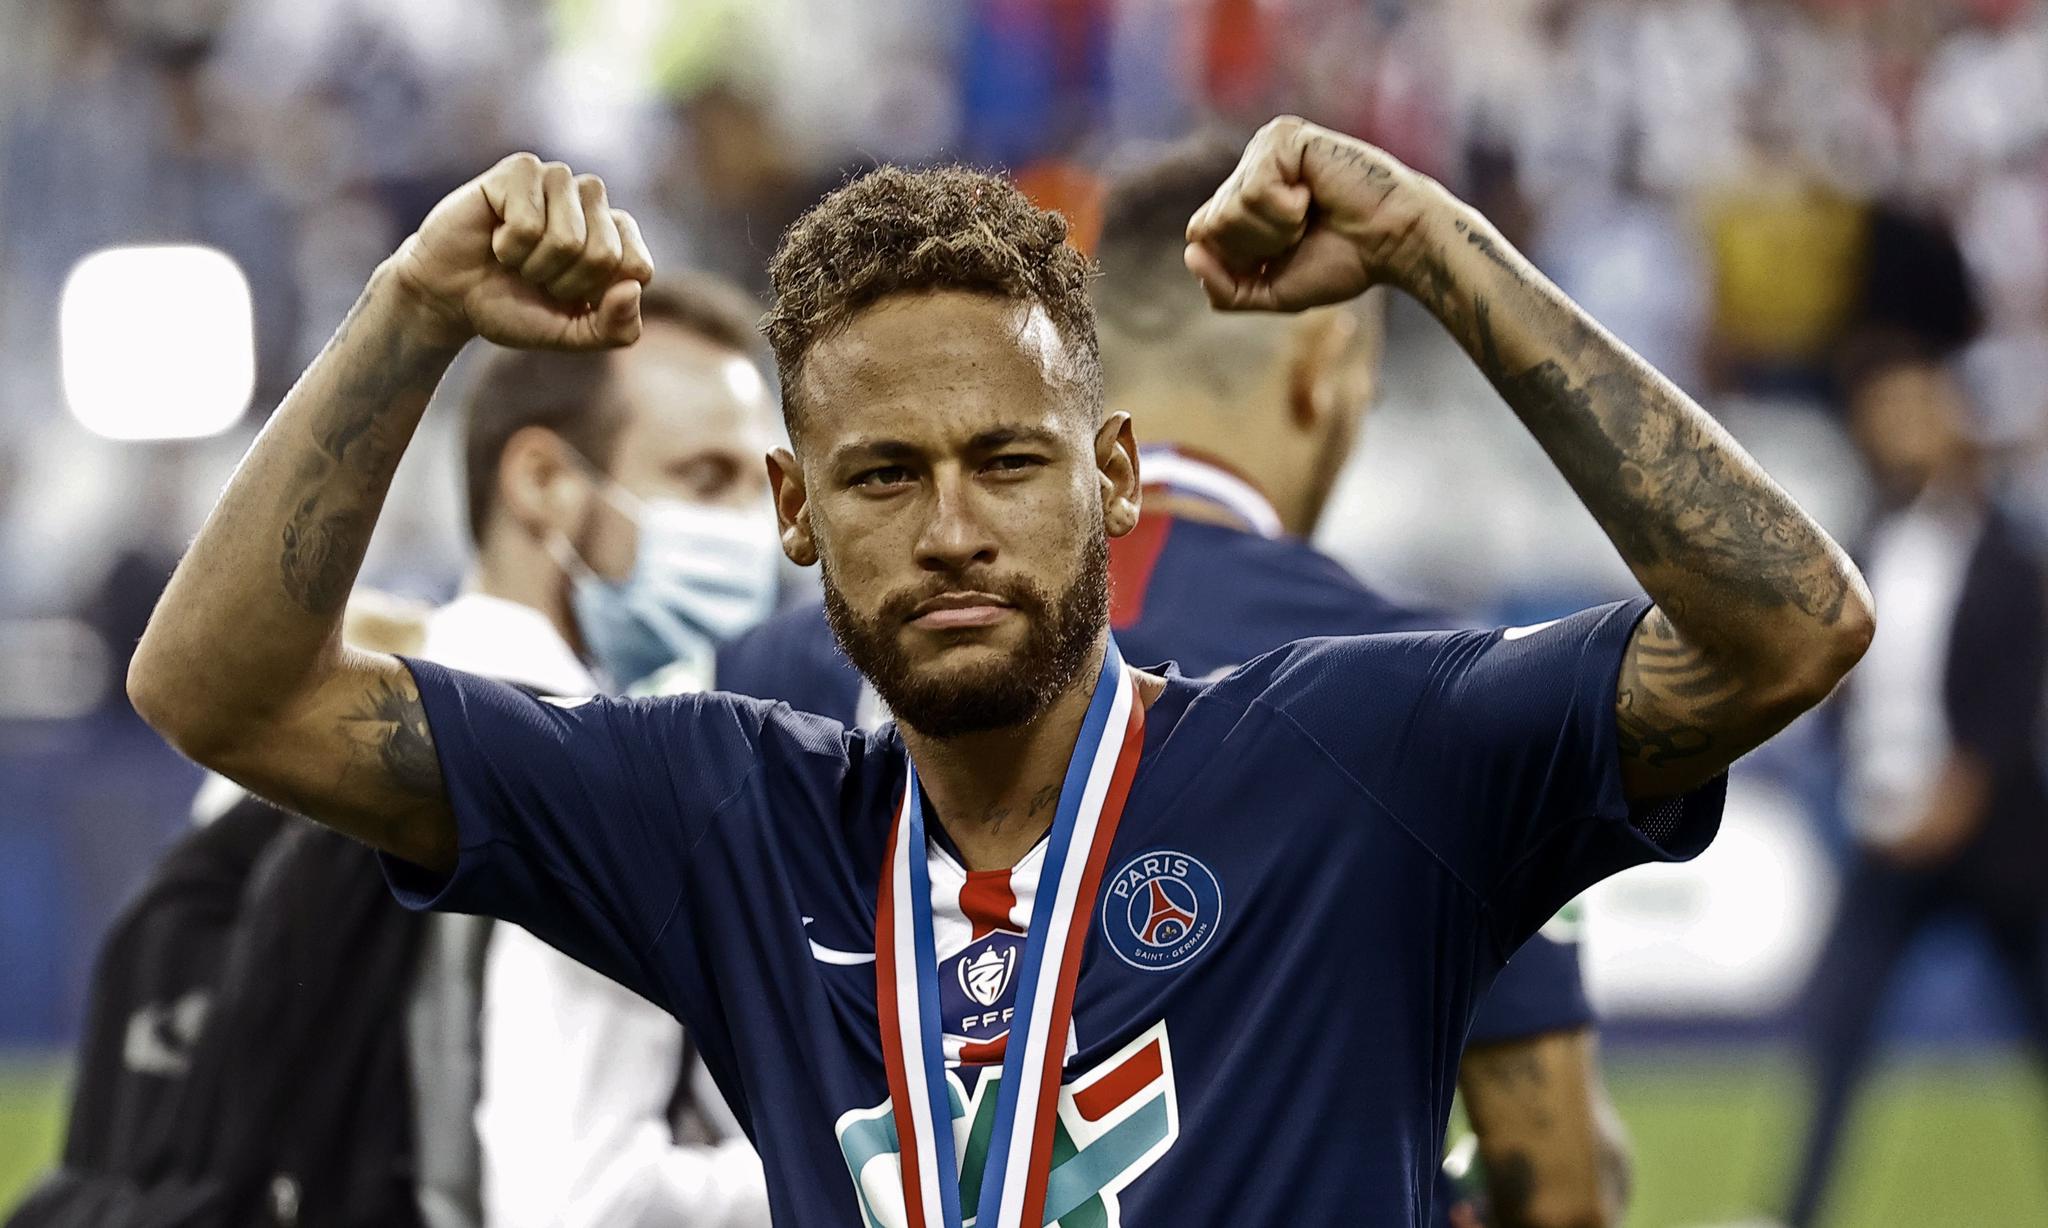 法国杯:巴黎圣日耳曼夺冠 7月24日,巴黎圣日耳曼队球员内马尔庆祝夺冠